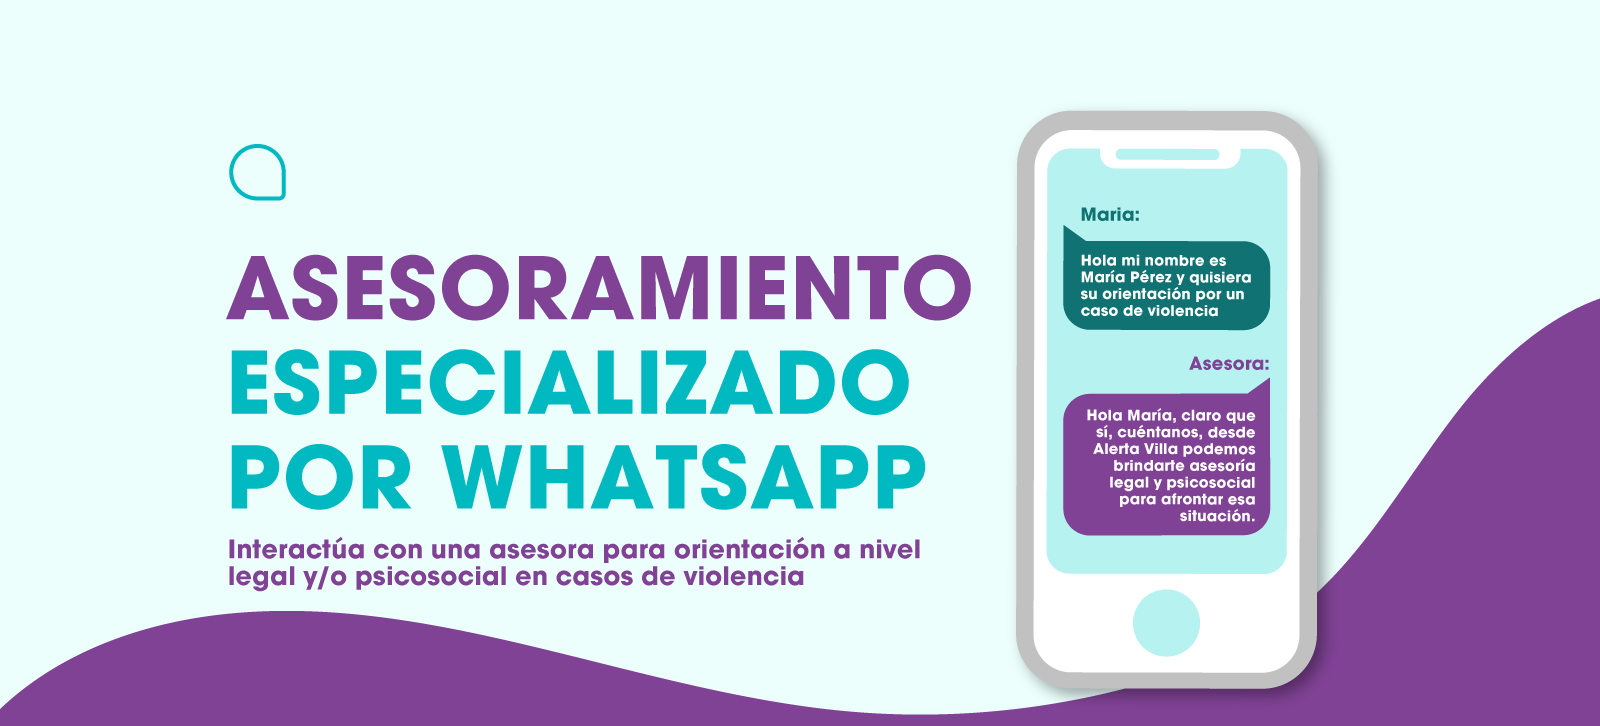 Banner de asesoramiento especializado por WhatsApp de Alerta Villa